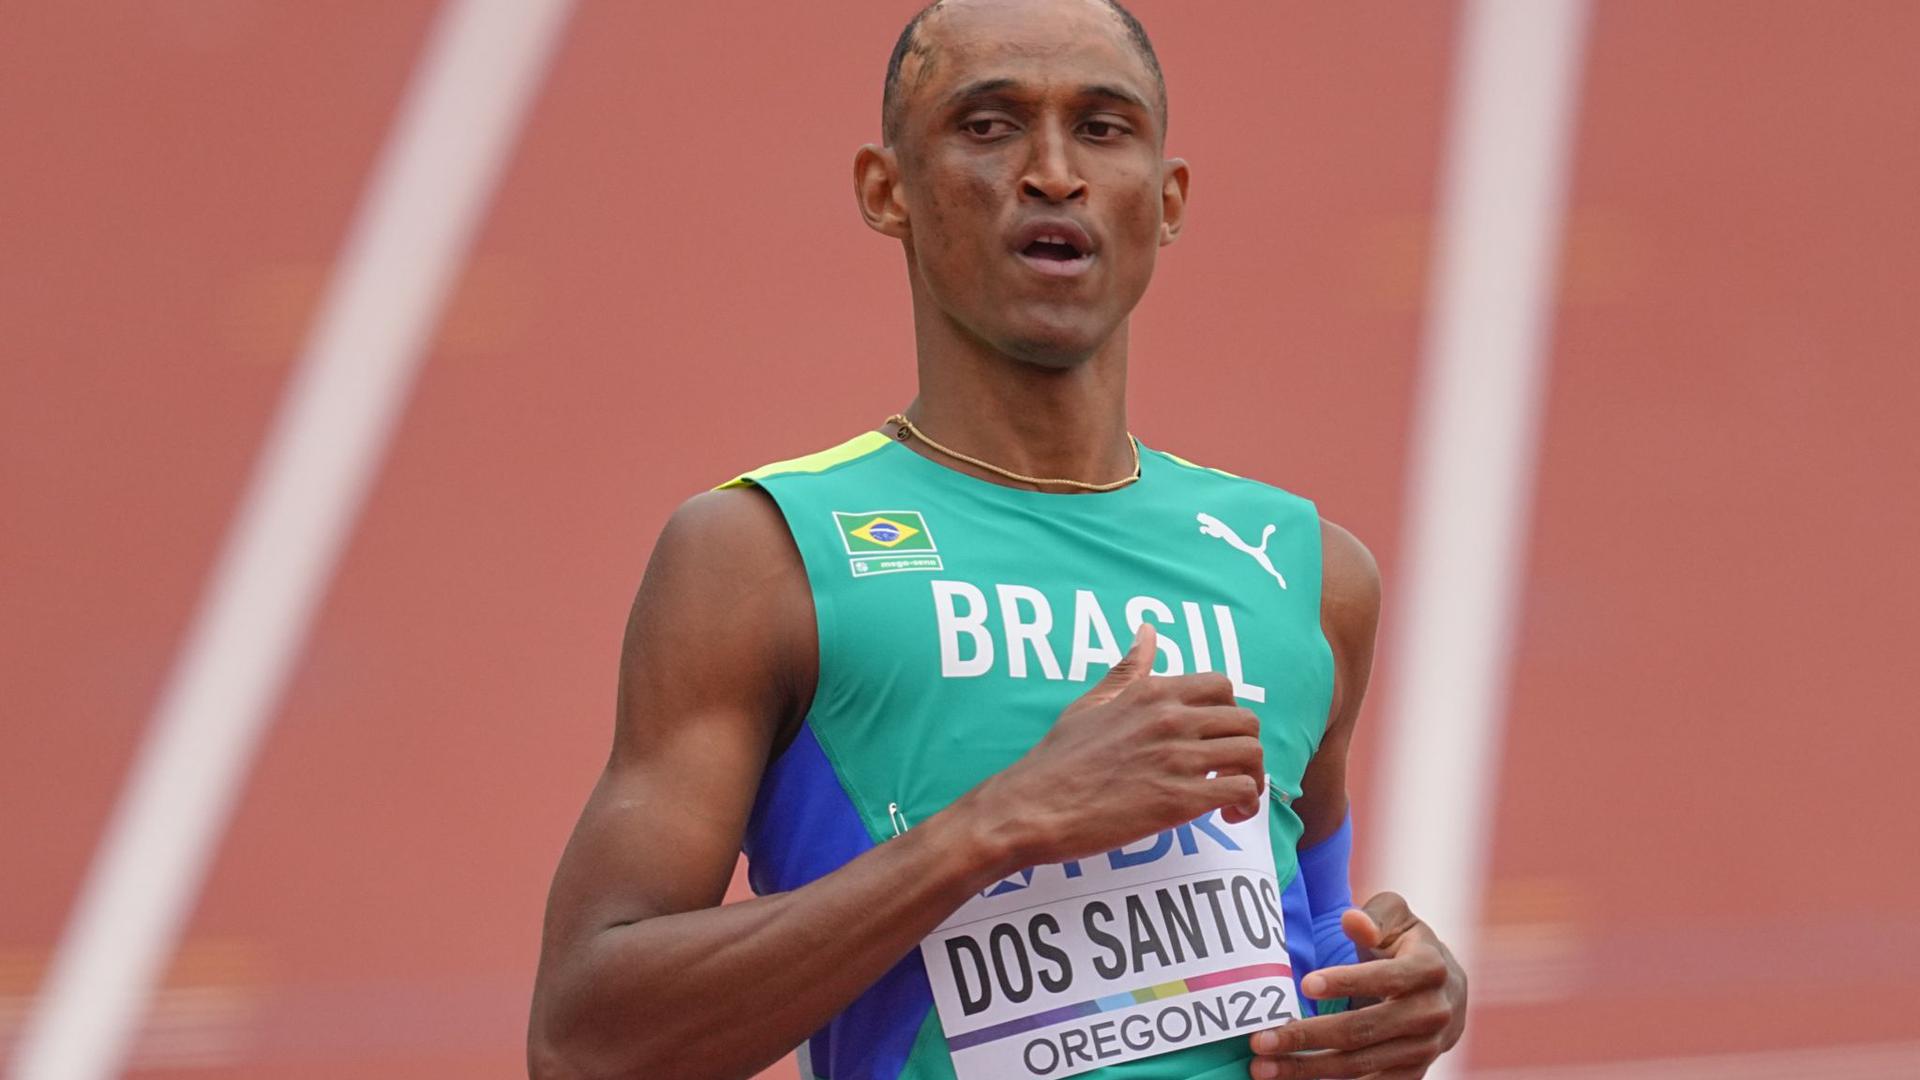 Der Brasilianer Alison Dos Santos hat in Eugene über 400 Meter Hürden Gold gewonnen.